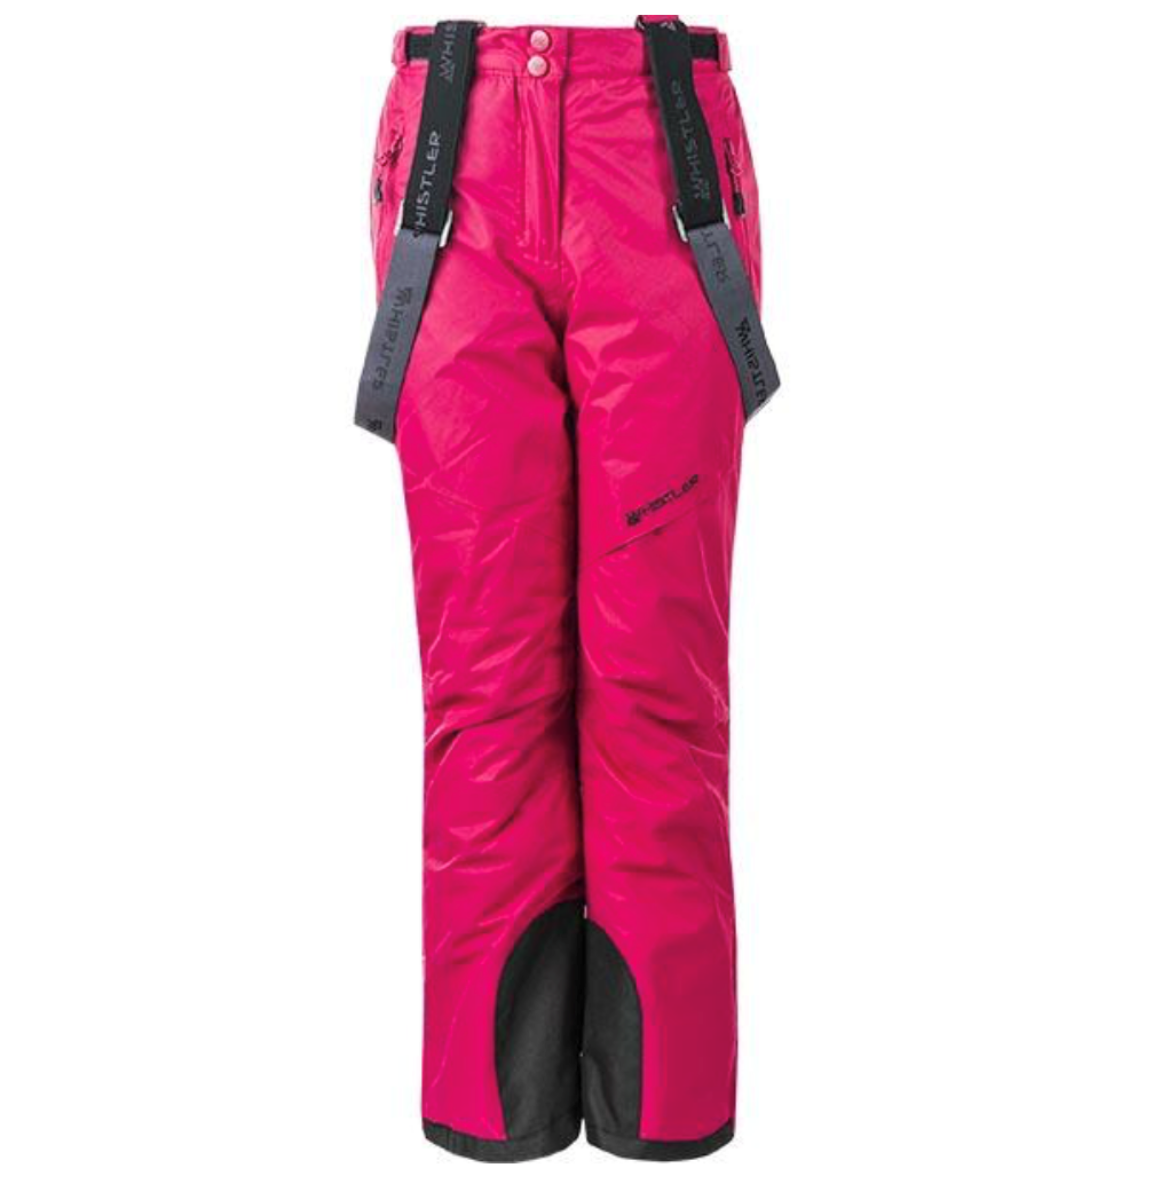 Whistler Portland W Softshell Ski Pant W-pro 8000 - Women's ski pants